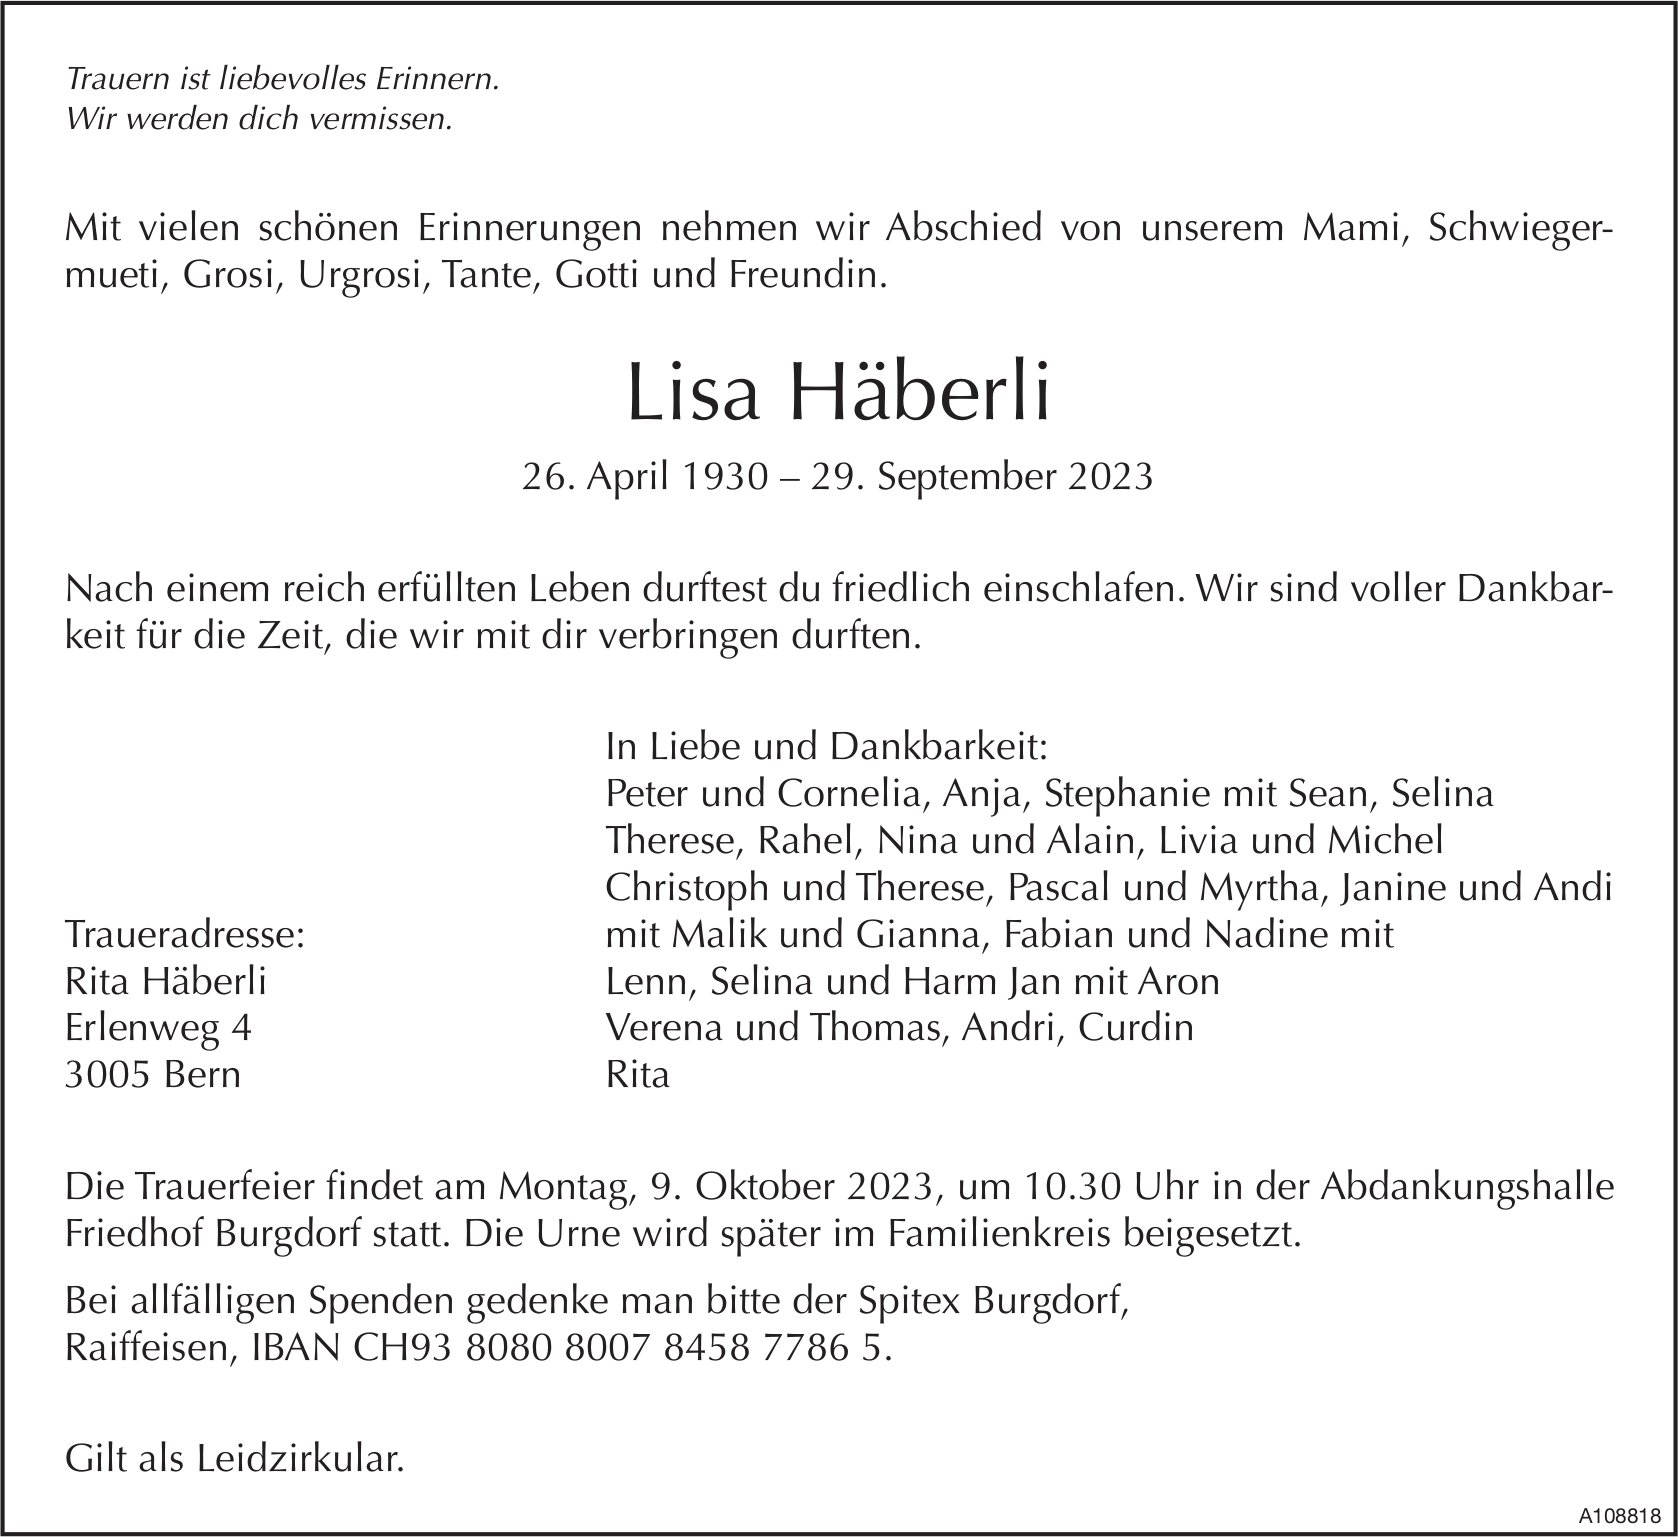 Lisa Häberli, September 2023 / TA